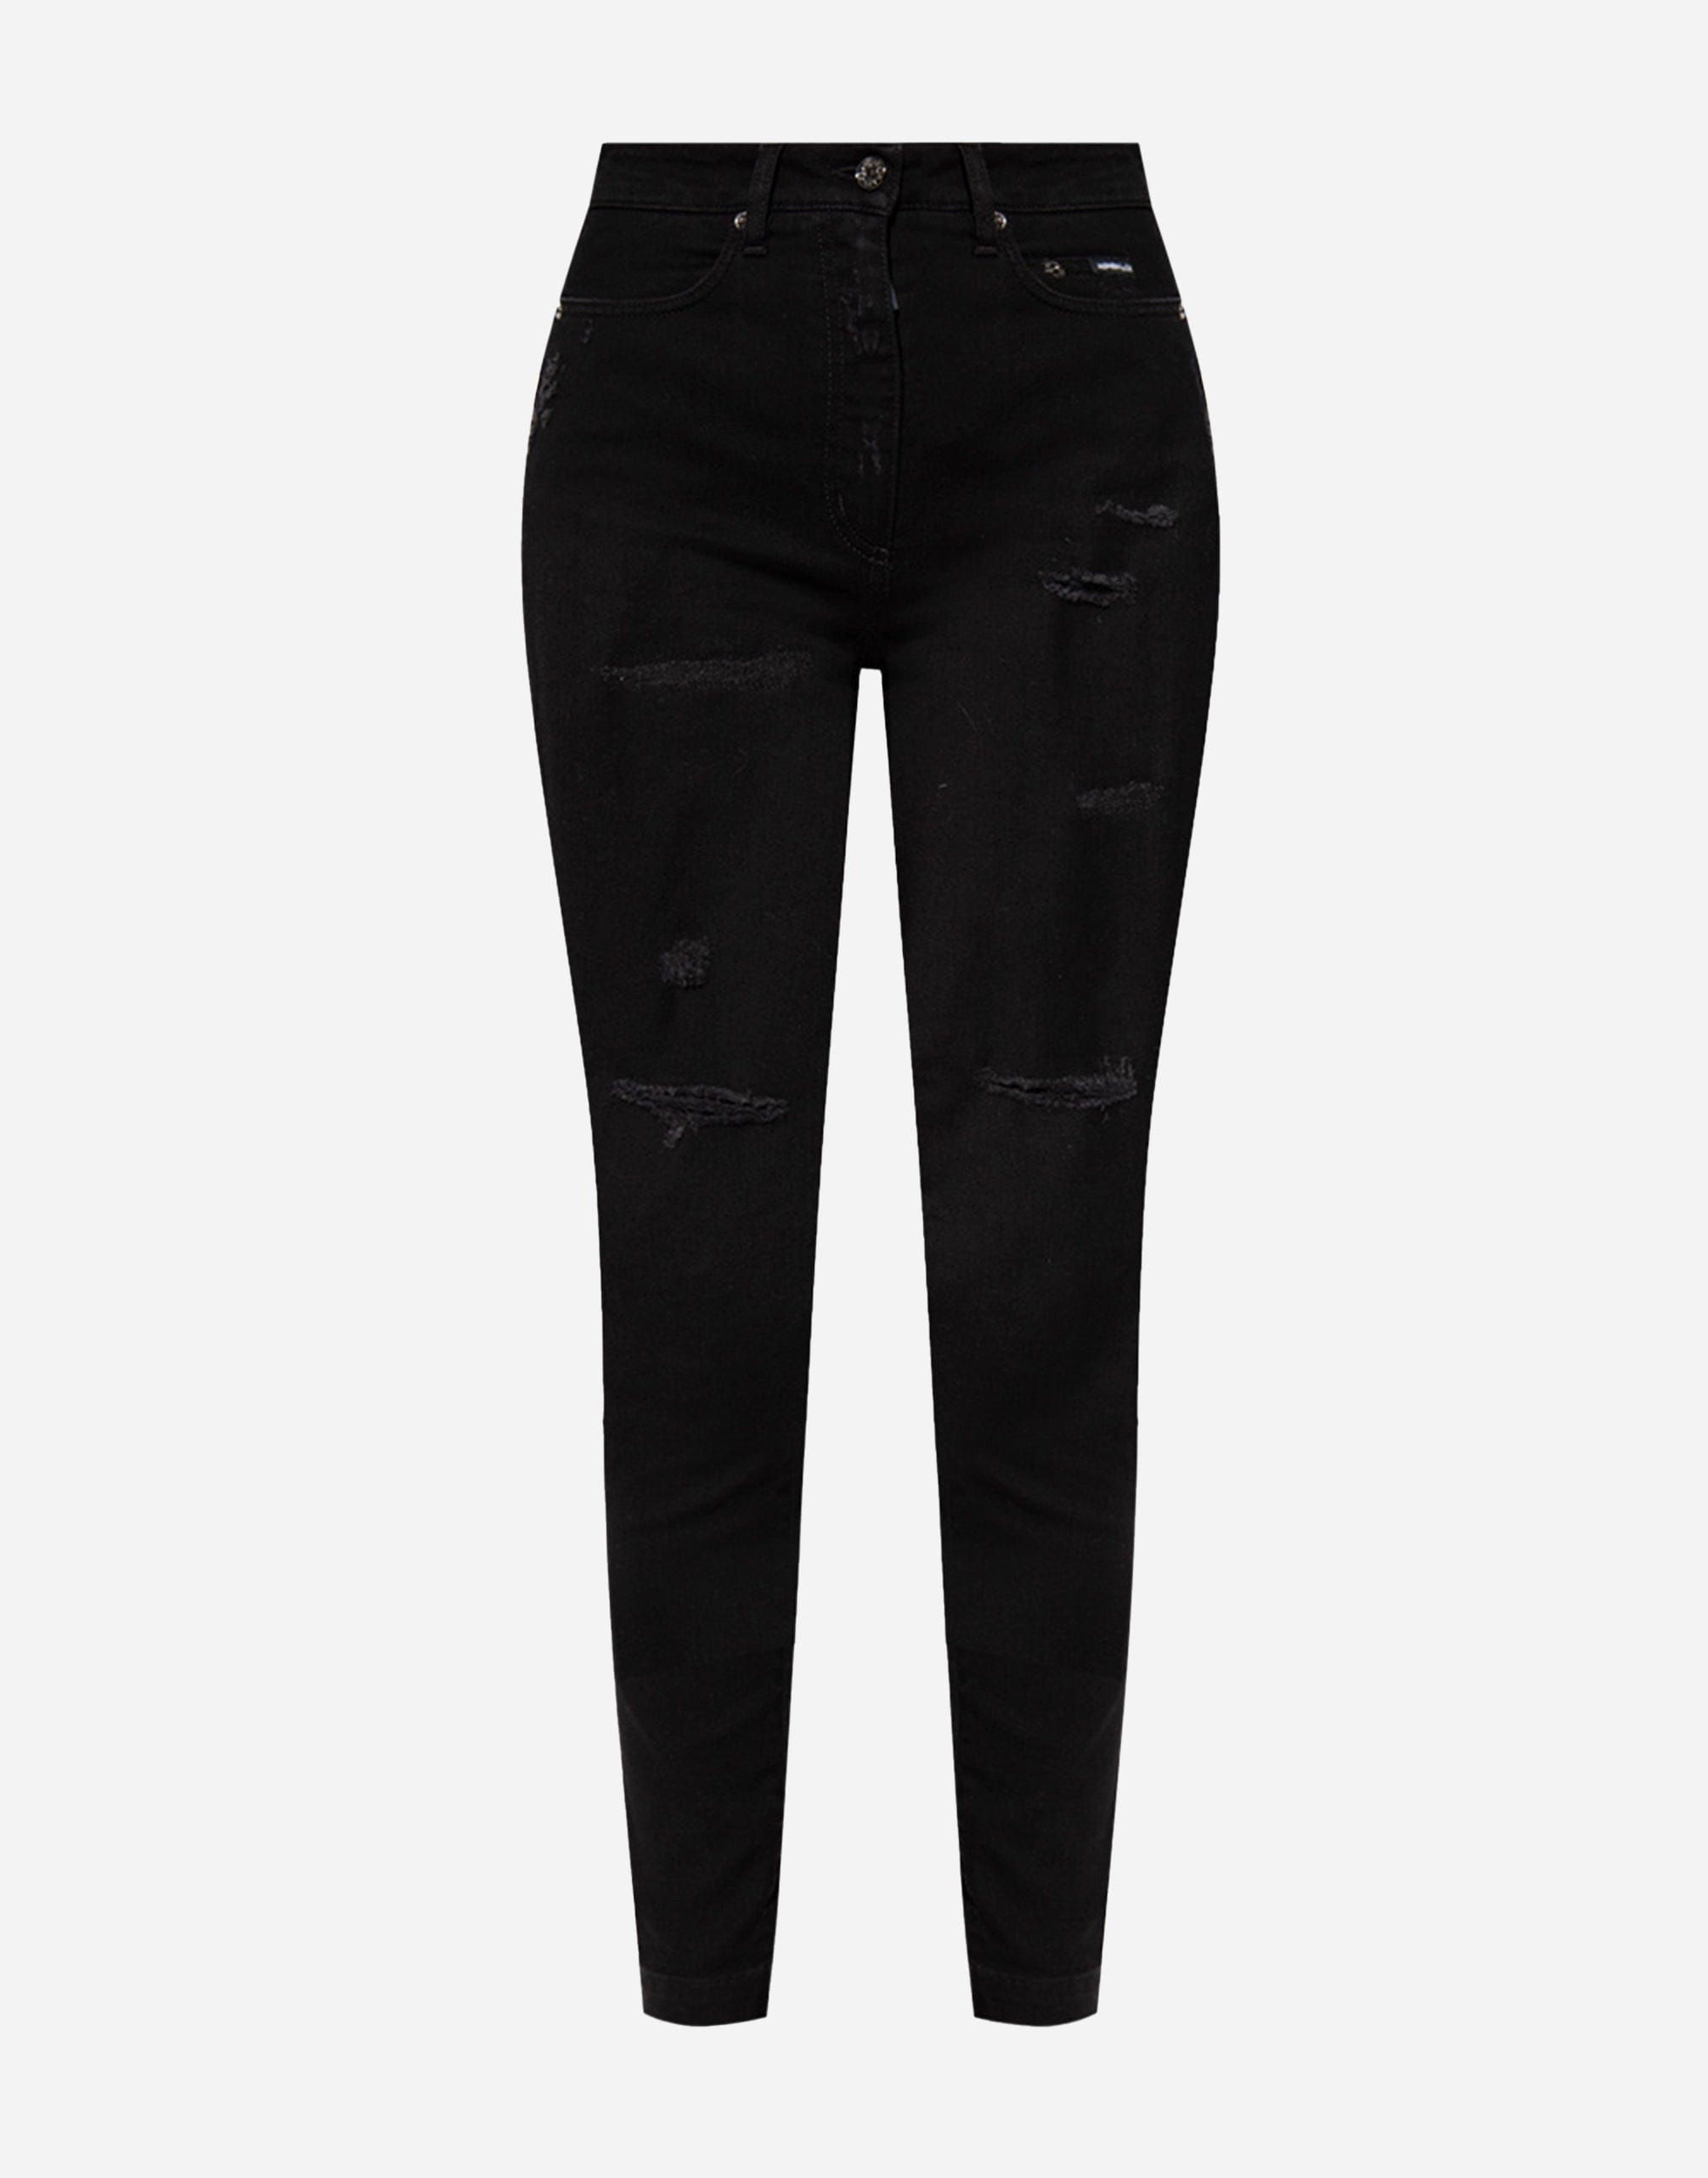 Audrey High-Wasit Cotton Jeans